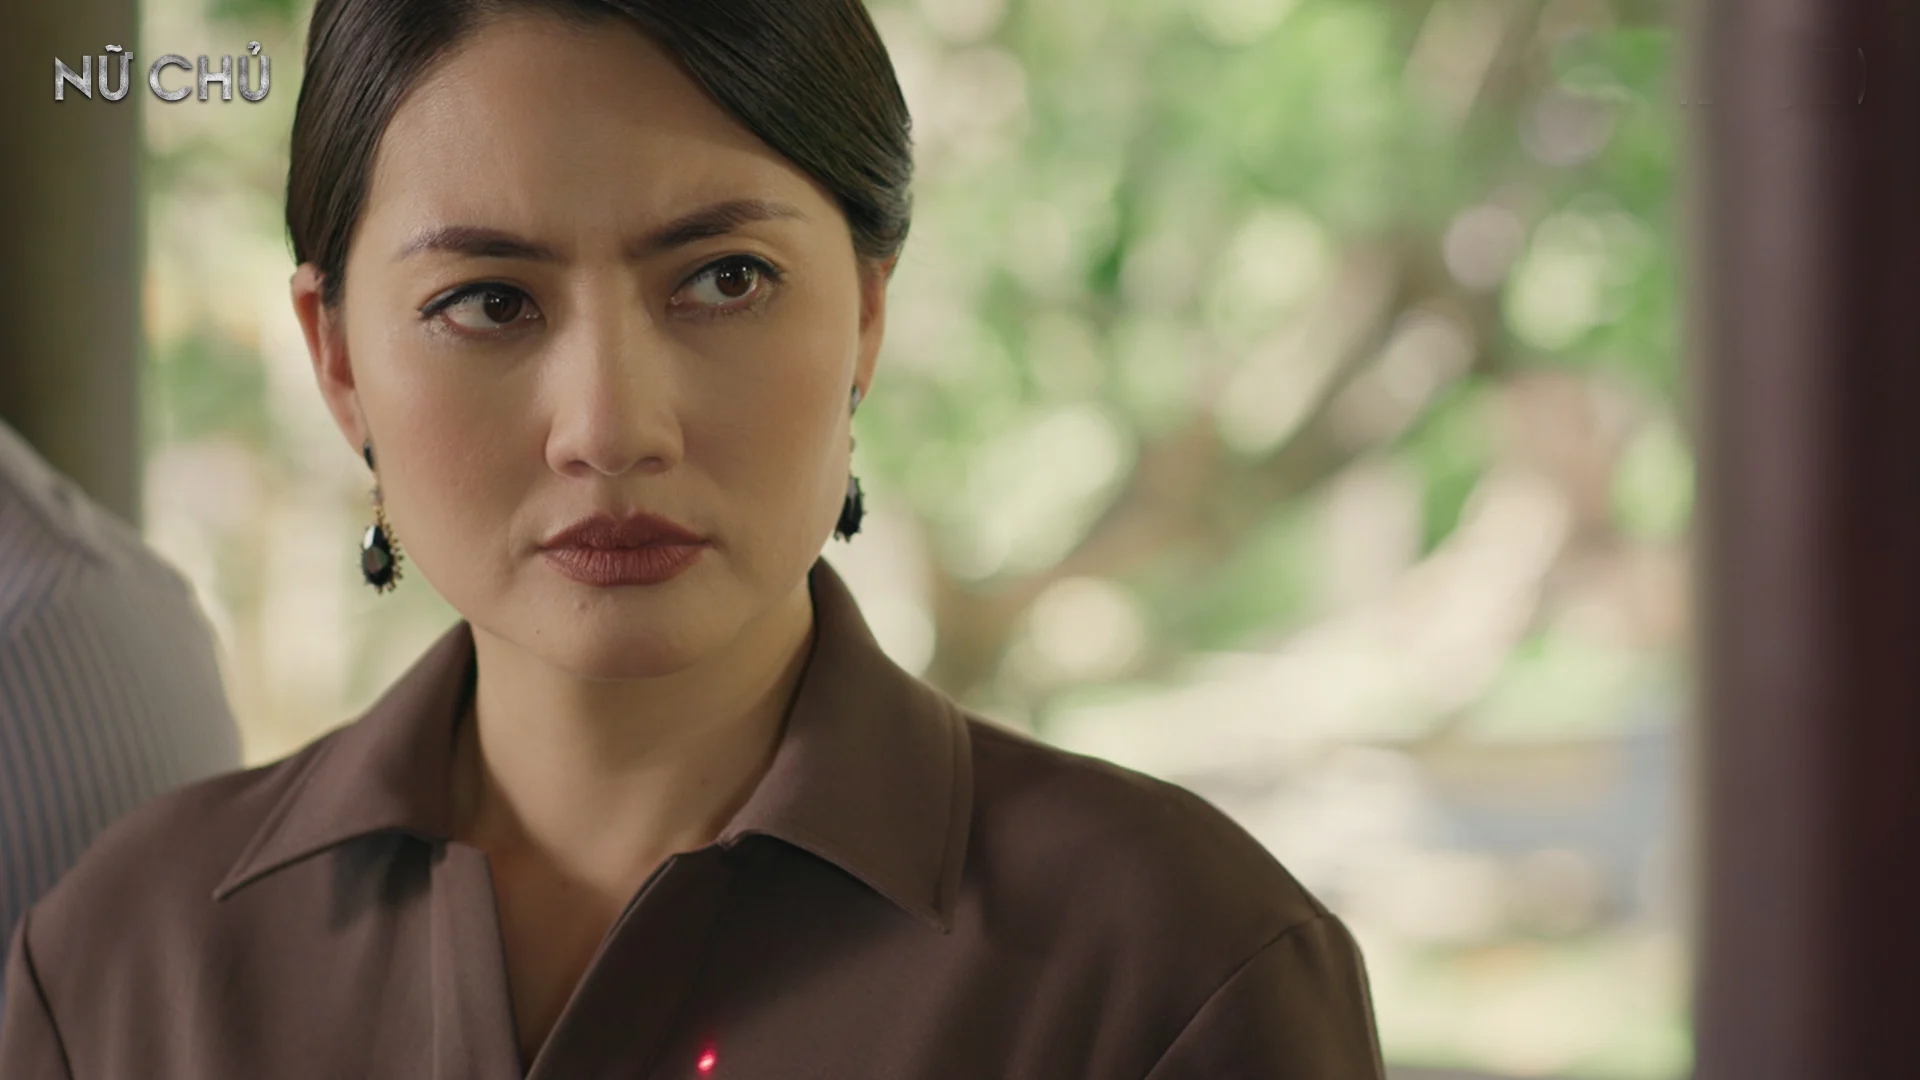 Nữ chính gây tranh cãi nhất phim Việt hiện tại: Thoại không cảm xúc, diễn xuất thua xa dàn nữ phụ - Ảnh 3.